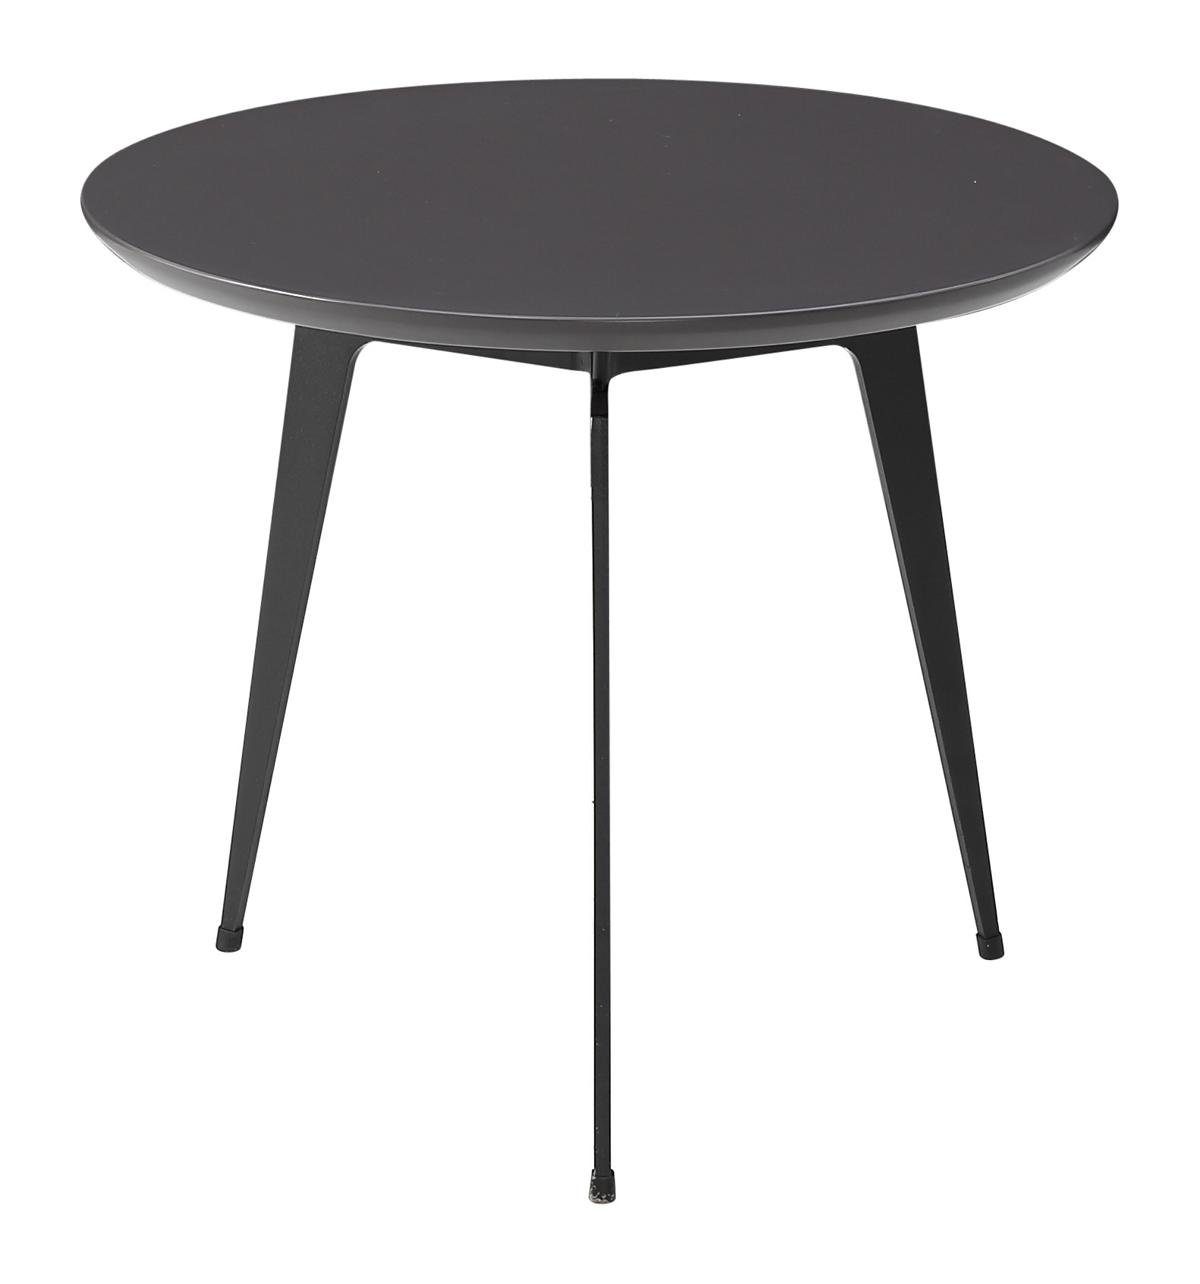 Jafra Couchtisch, Beistelltisch Runder Tisch Runde Tische Couchtisch Sofa Design Tisch Wohnzimmer